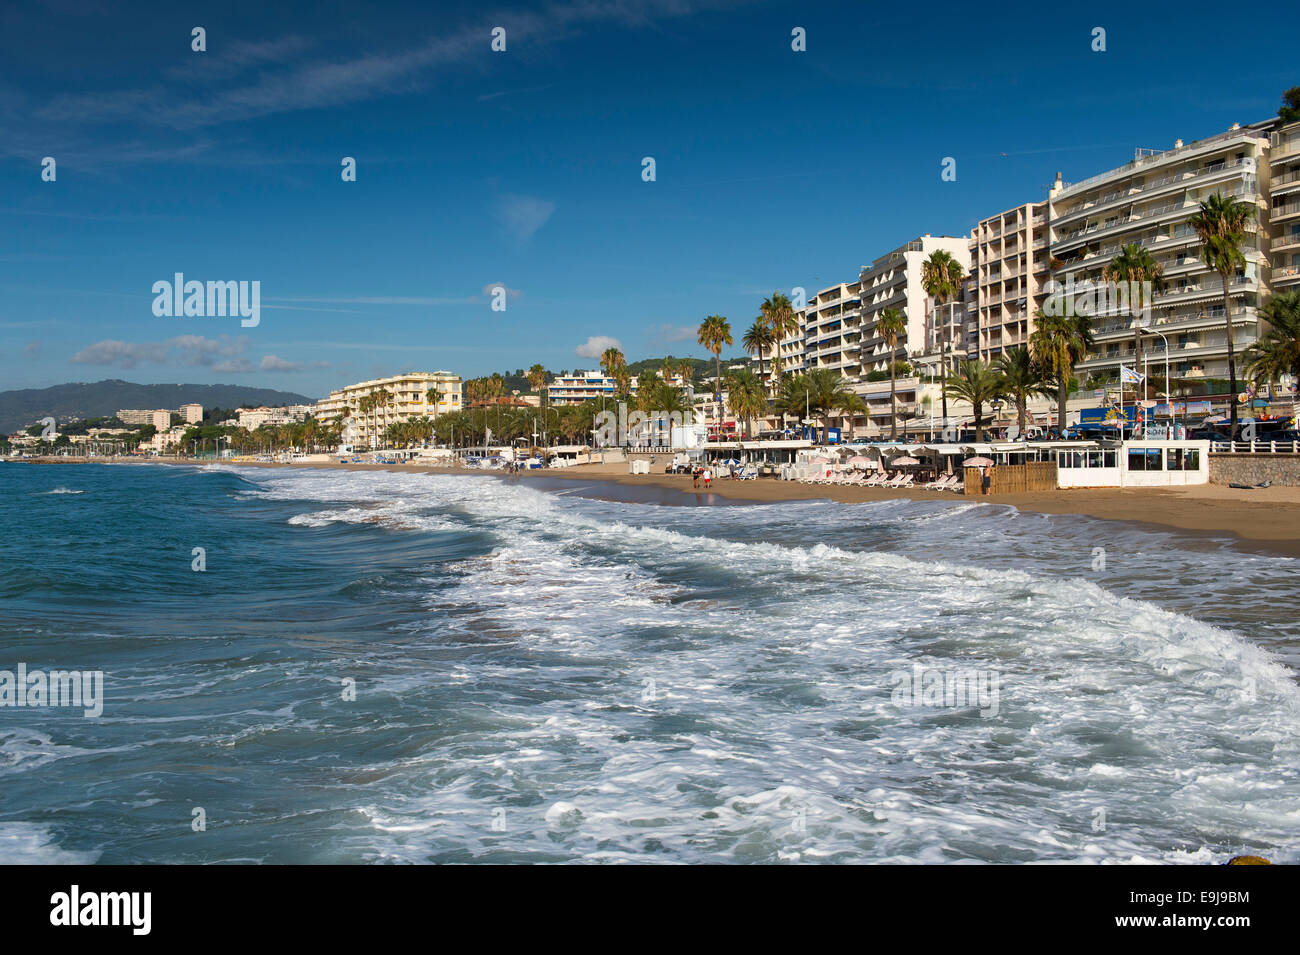 La principale plage de Cannes, sud de la France, sur la route de La Croisette. Banque D'Images